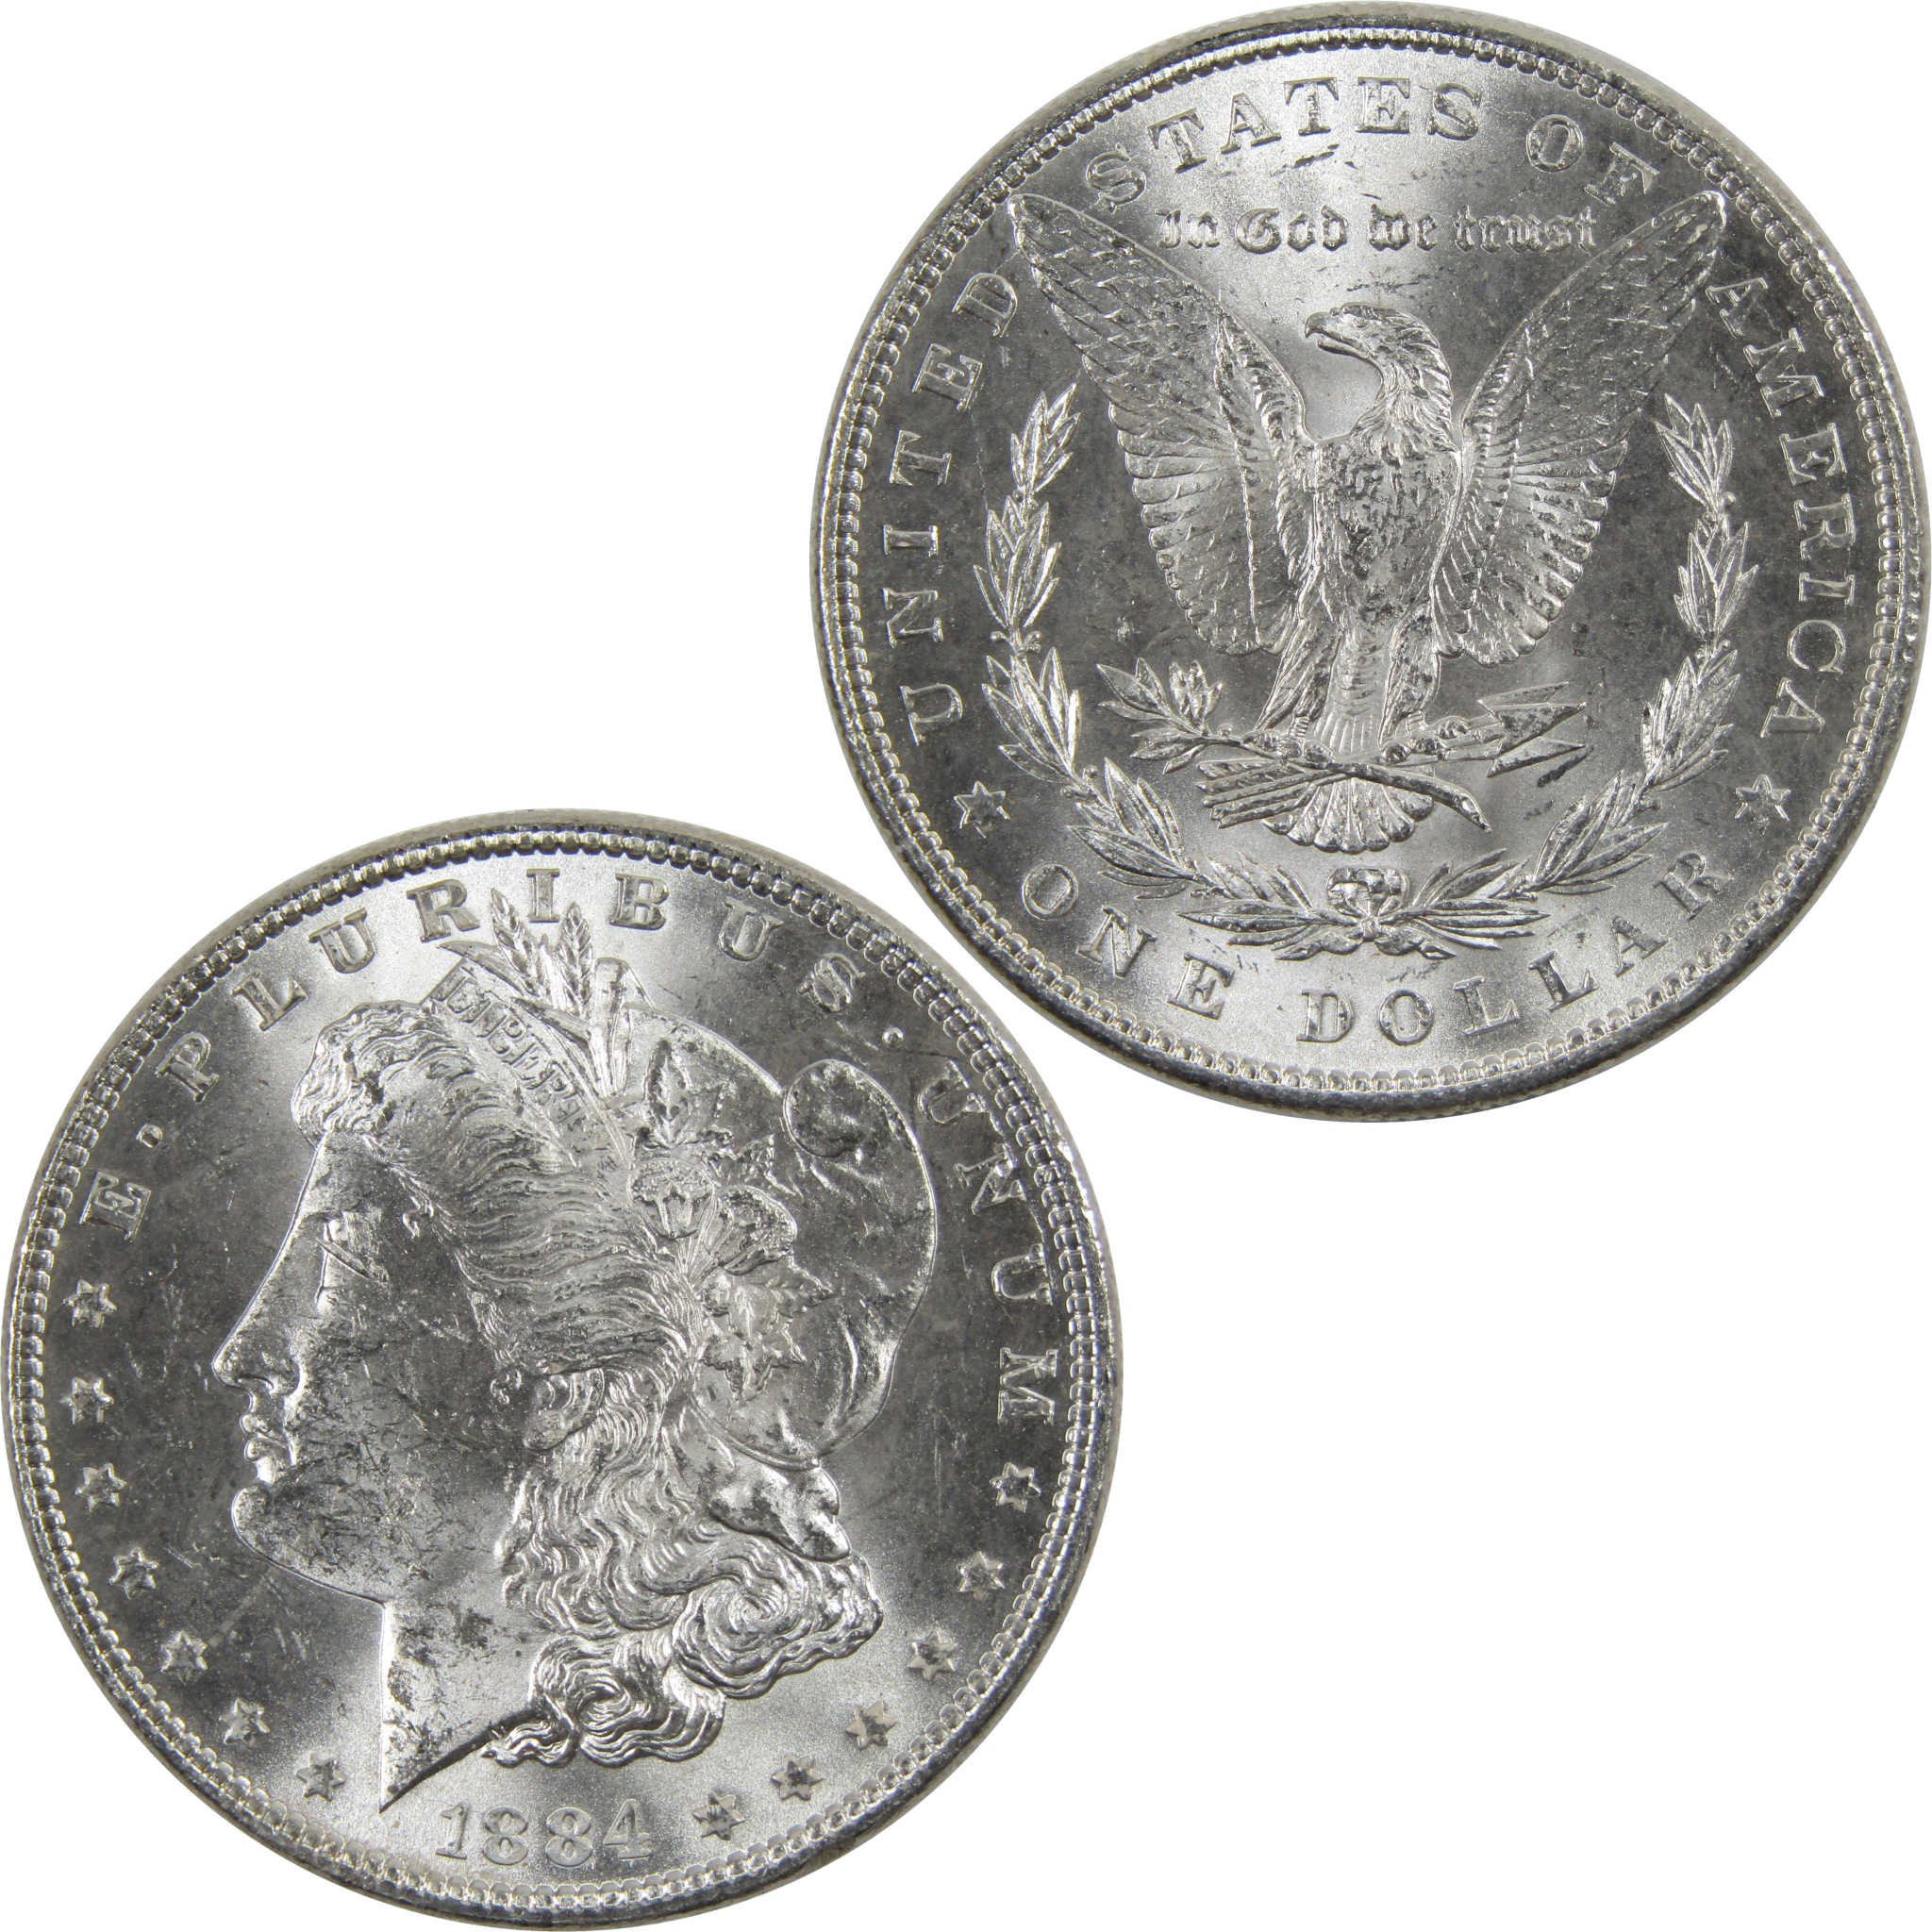 1884 Morgan Dollar BU Uncirculated 90% Silver $1 Coin SKU:I6022 - Morgan coin - Morgan silver dollar - Morgan silver dollar for sale - Profile Coins &amp; Collectibles